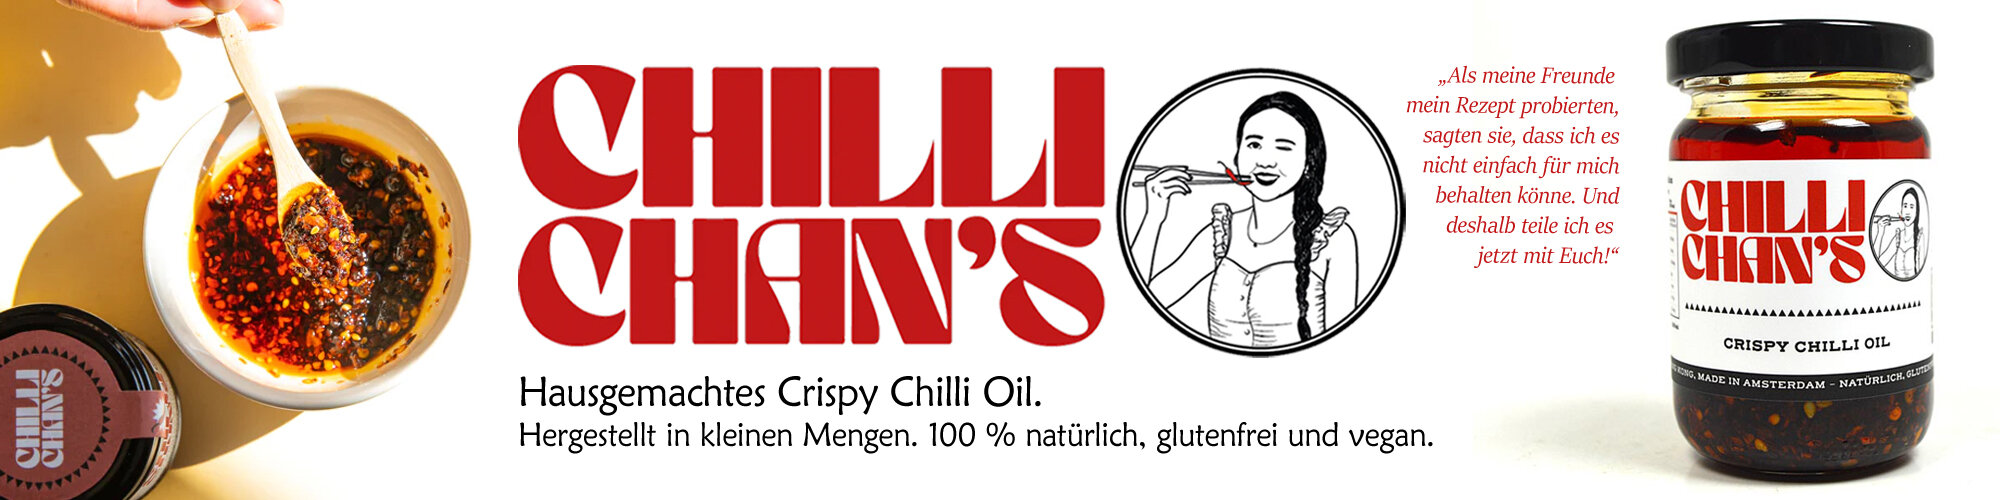 Chilli Chan's Crispy Chilli Oil